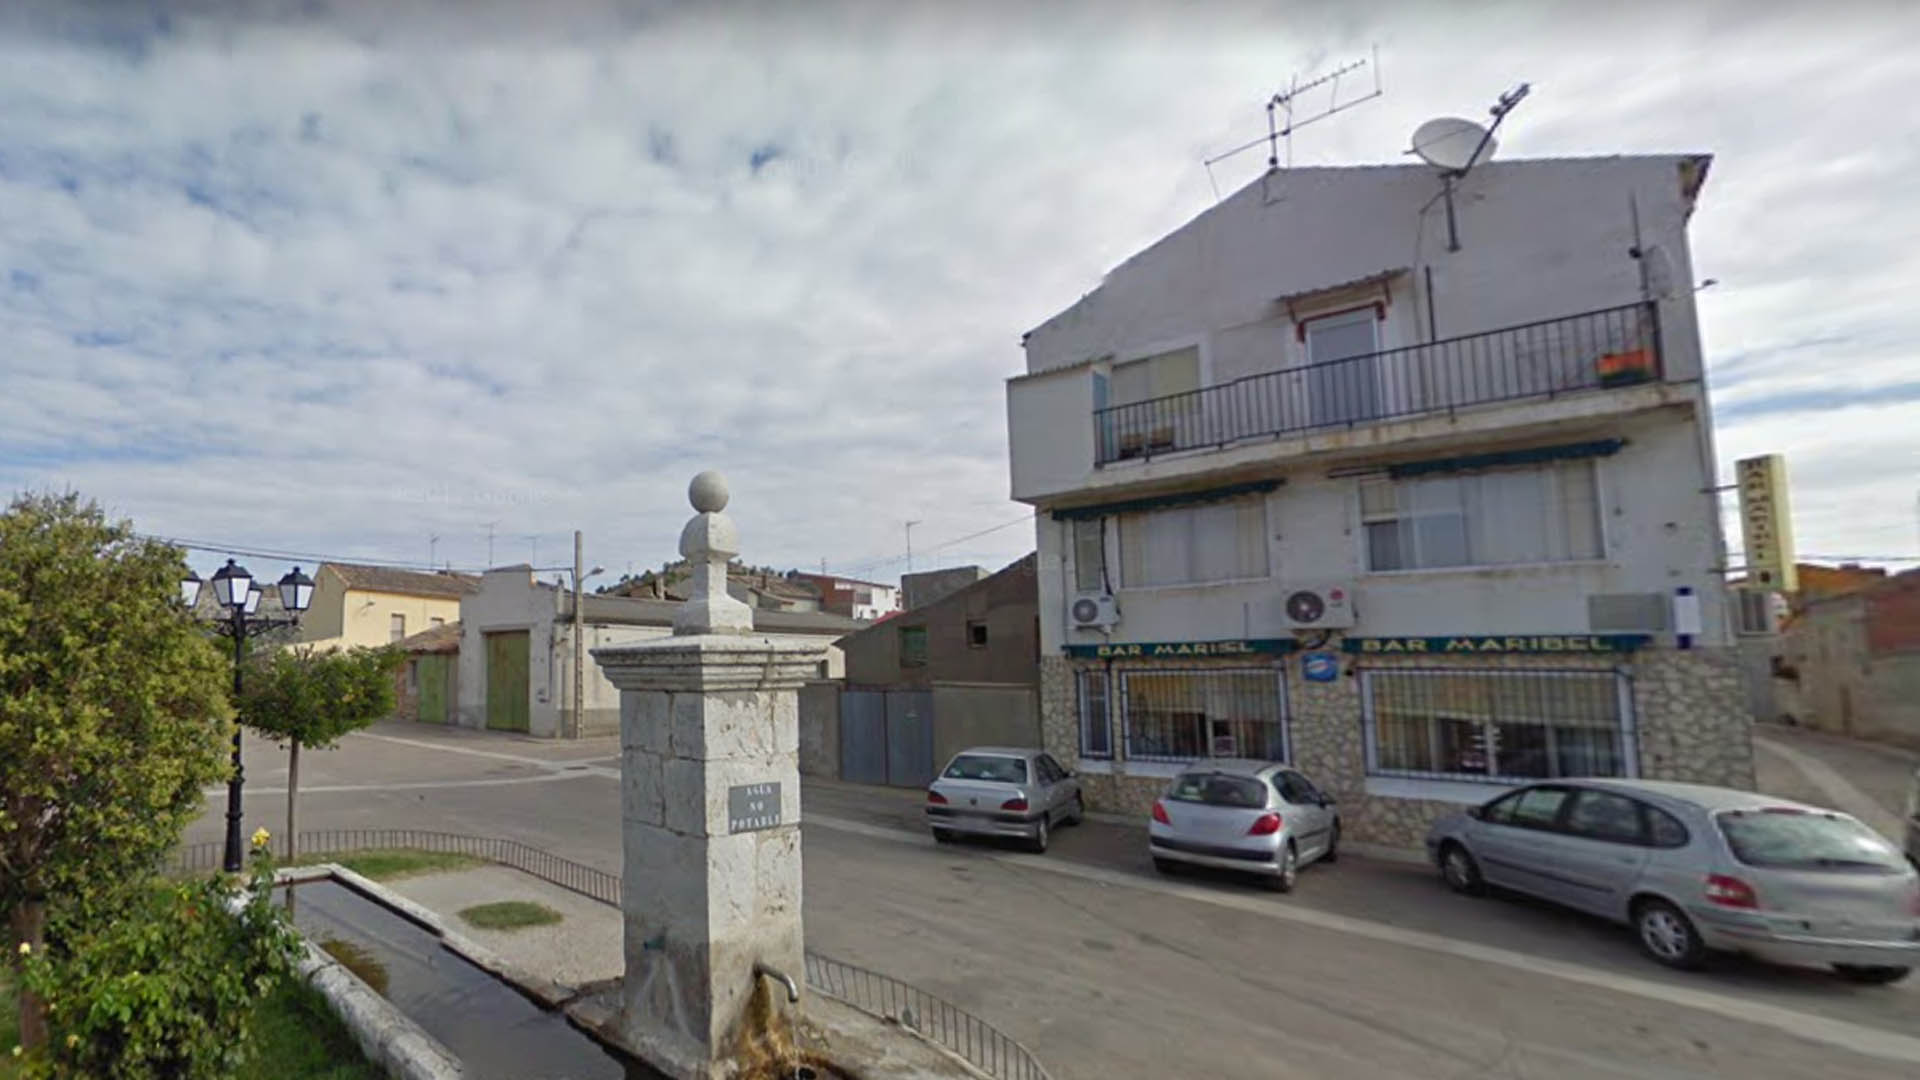 Mata a un hombre y hiere a otros tres por arma de fuego en un pueblo de Valladolid